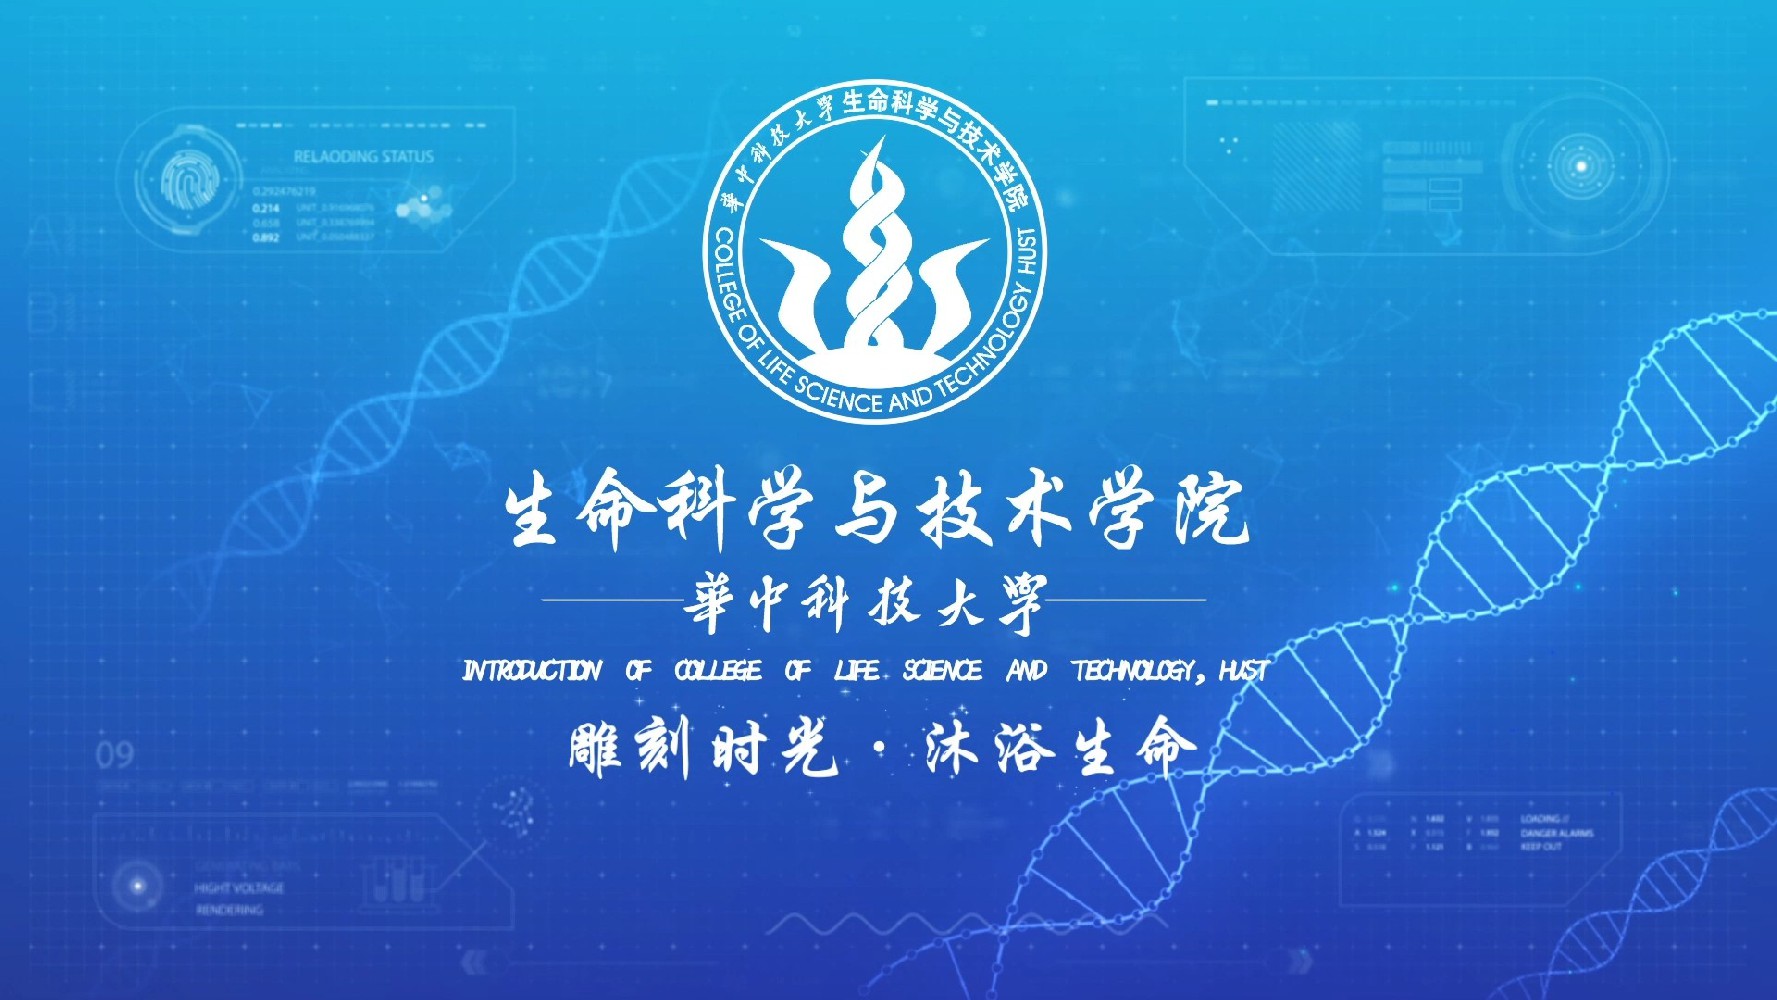 华中科技大学 生命科学与技术学院  宣传片